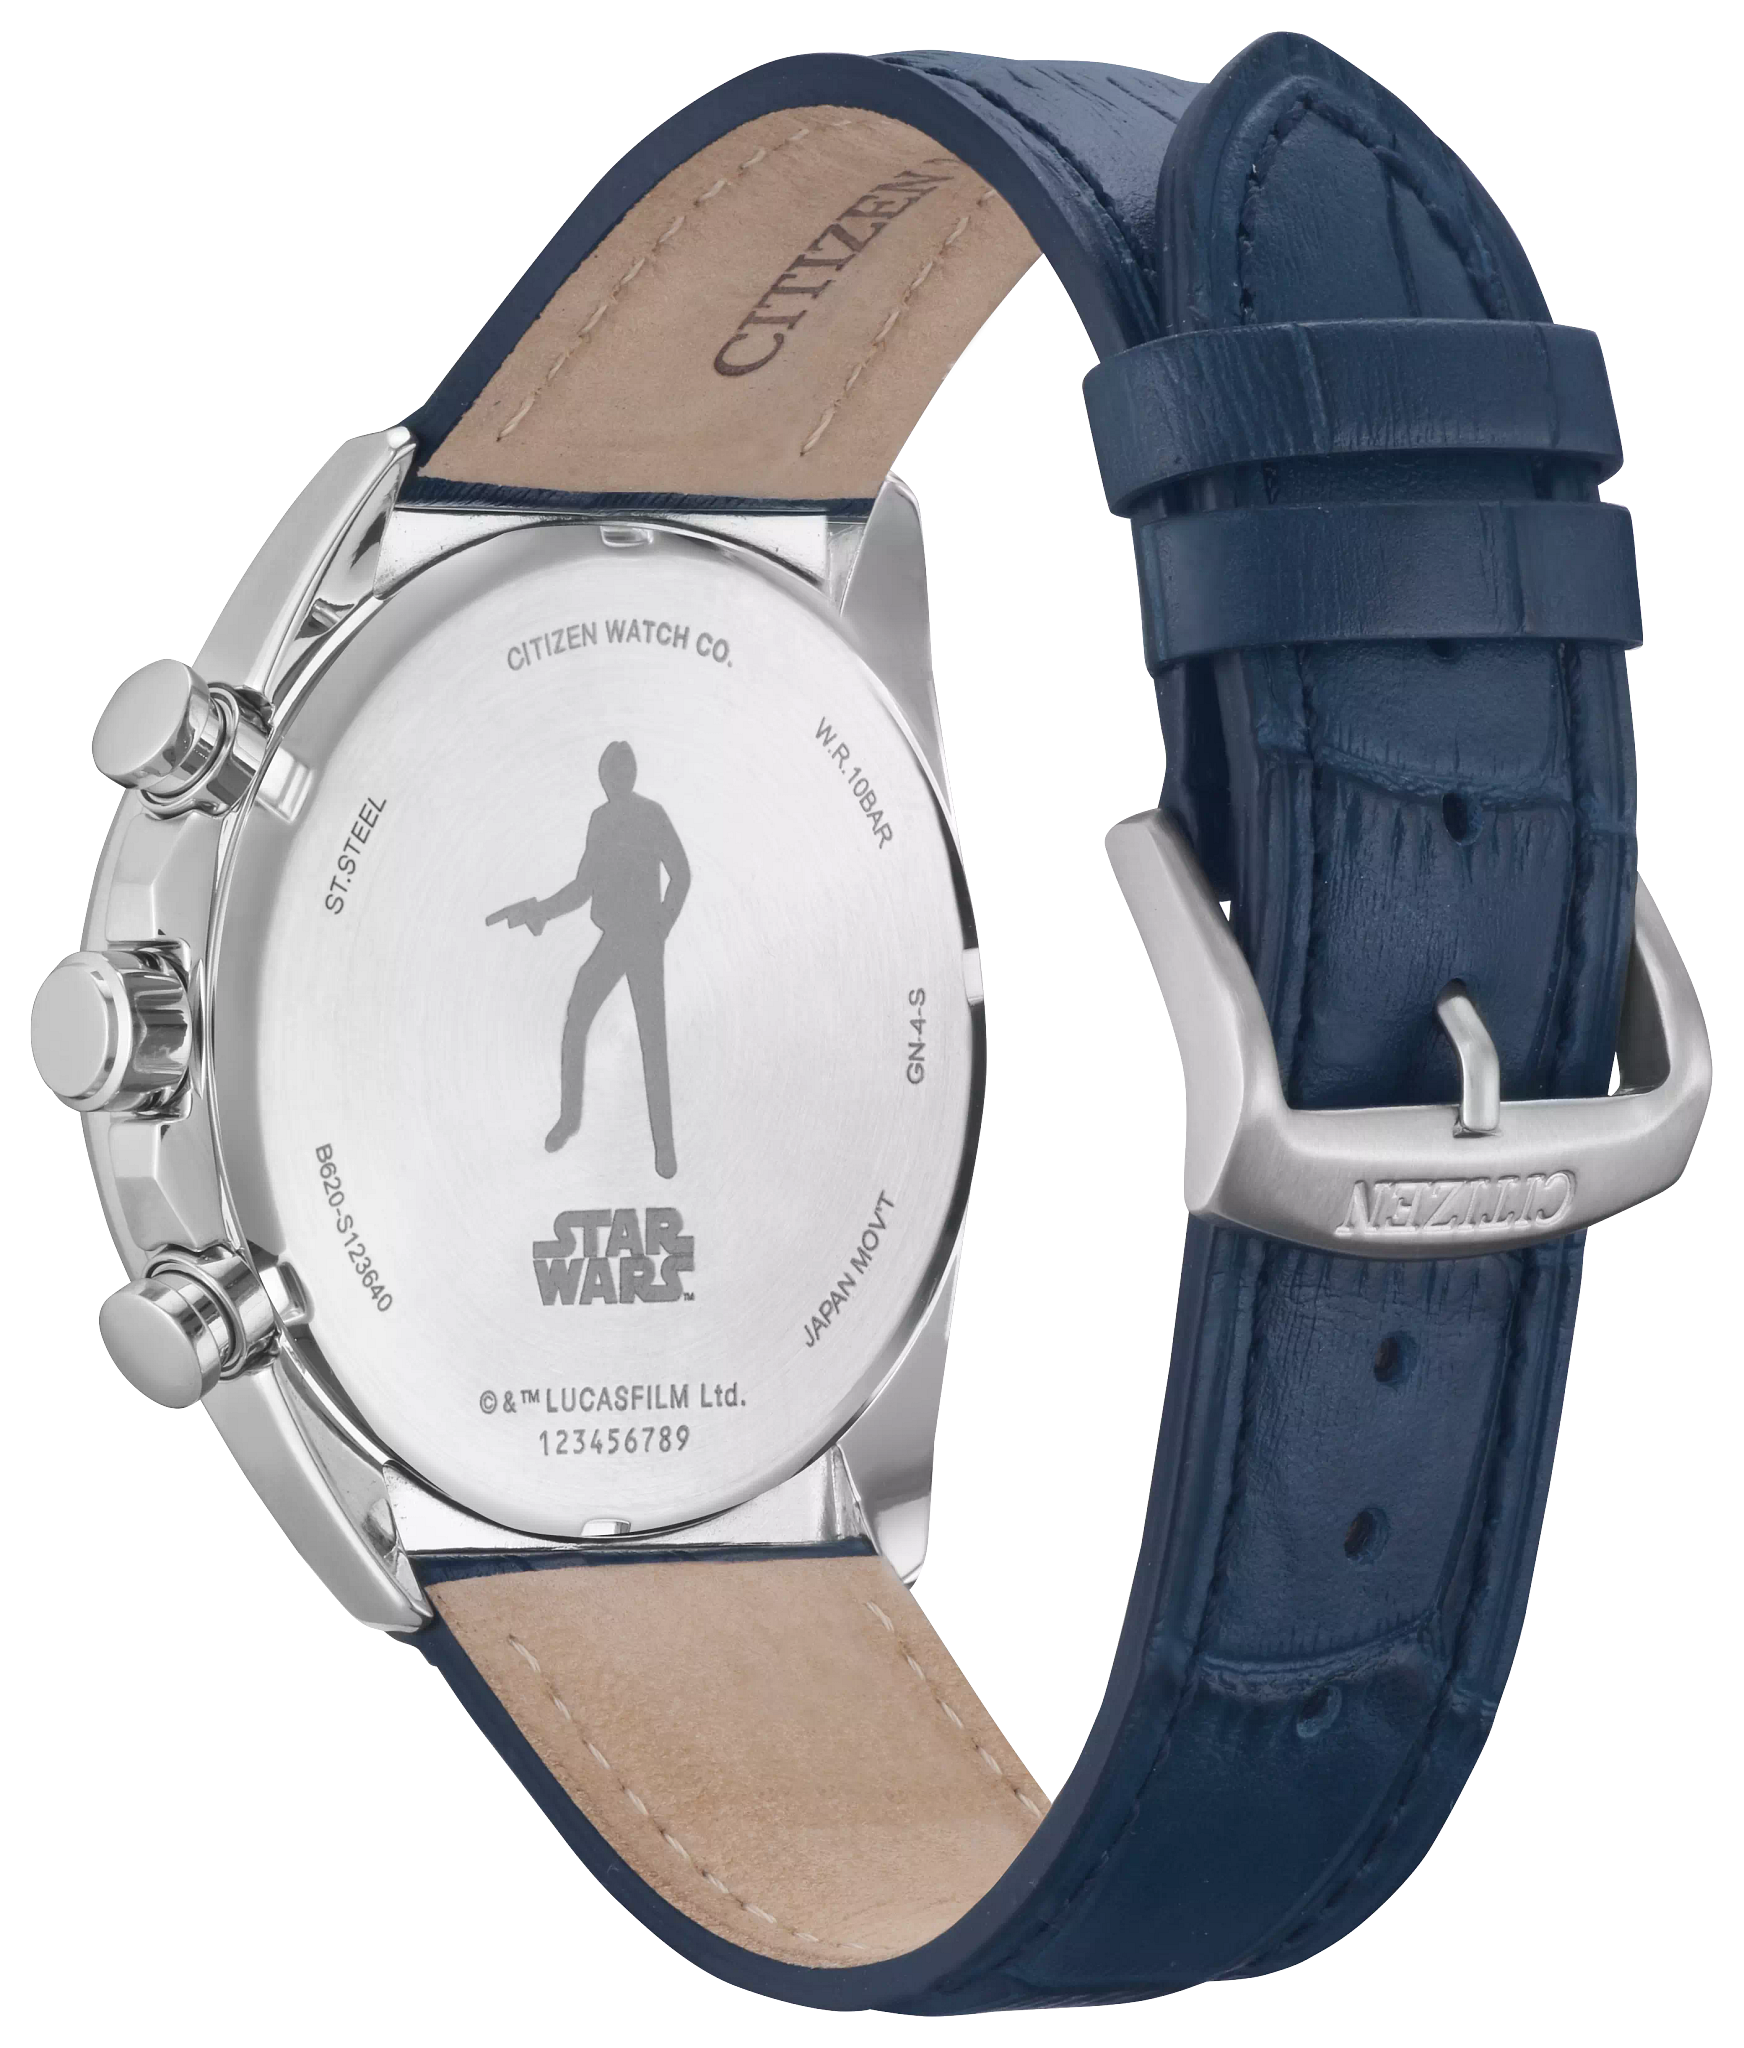 Buy Firebolt Smart Watch Falcon BSW098 Blue Online - Lulu Hypermarket India